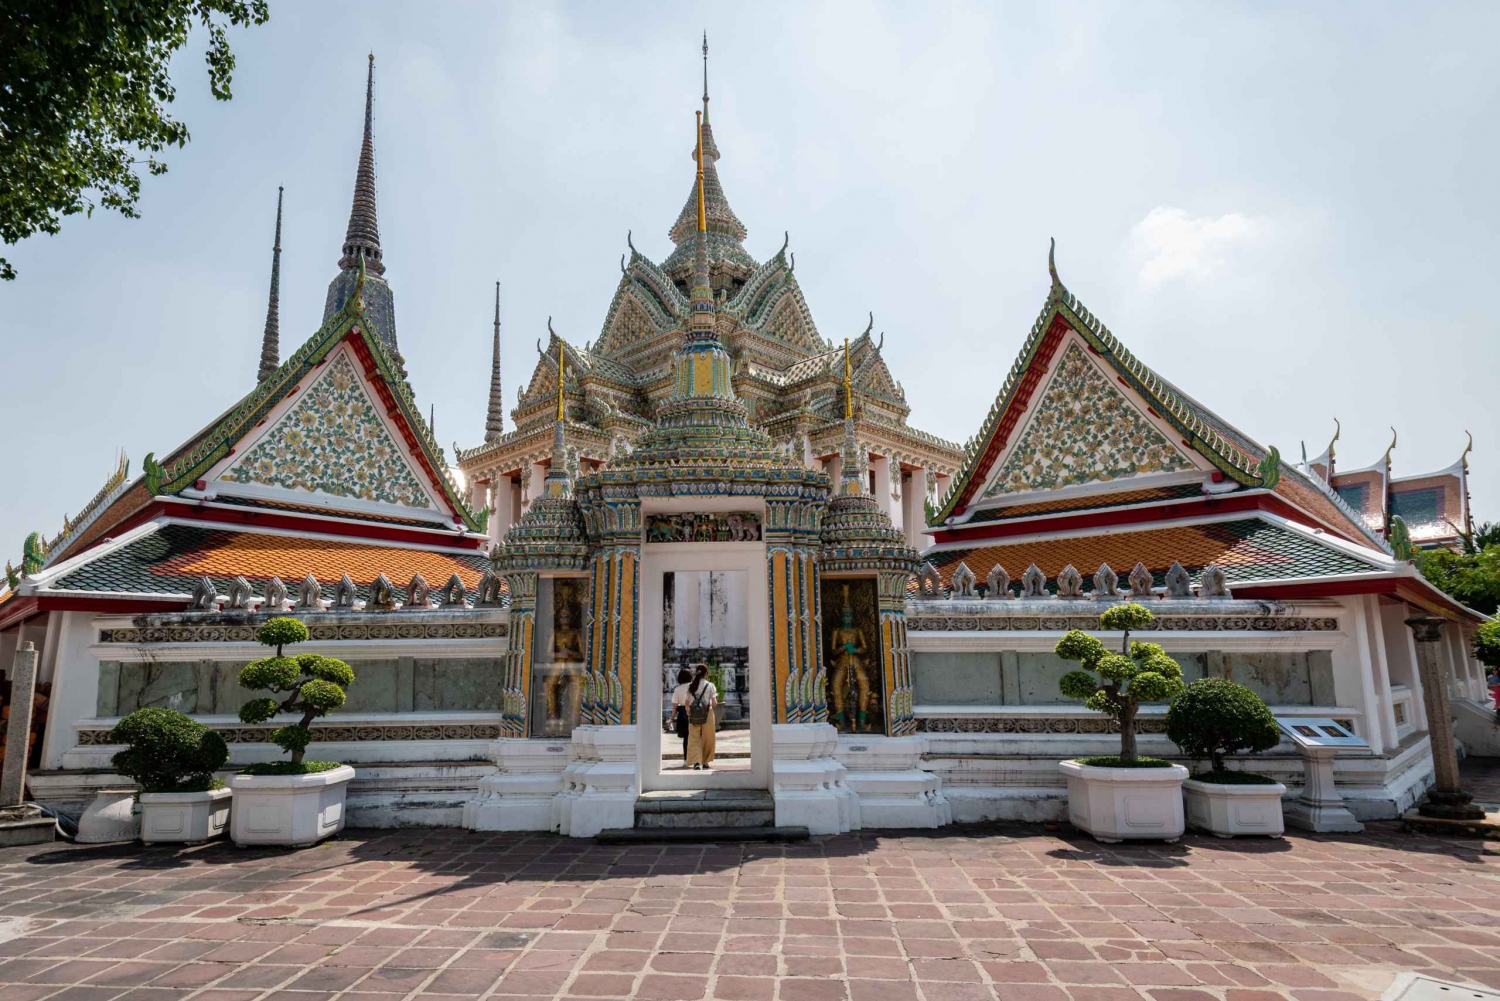 L'essenza di Bangkok: la città vecchia e i suoi templi classici